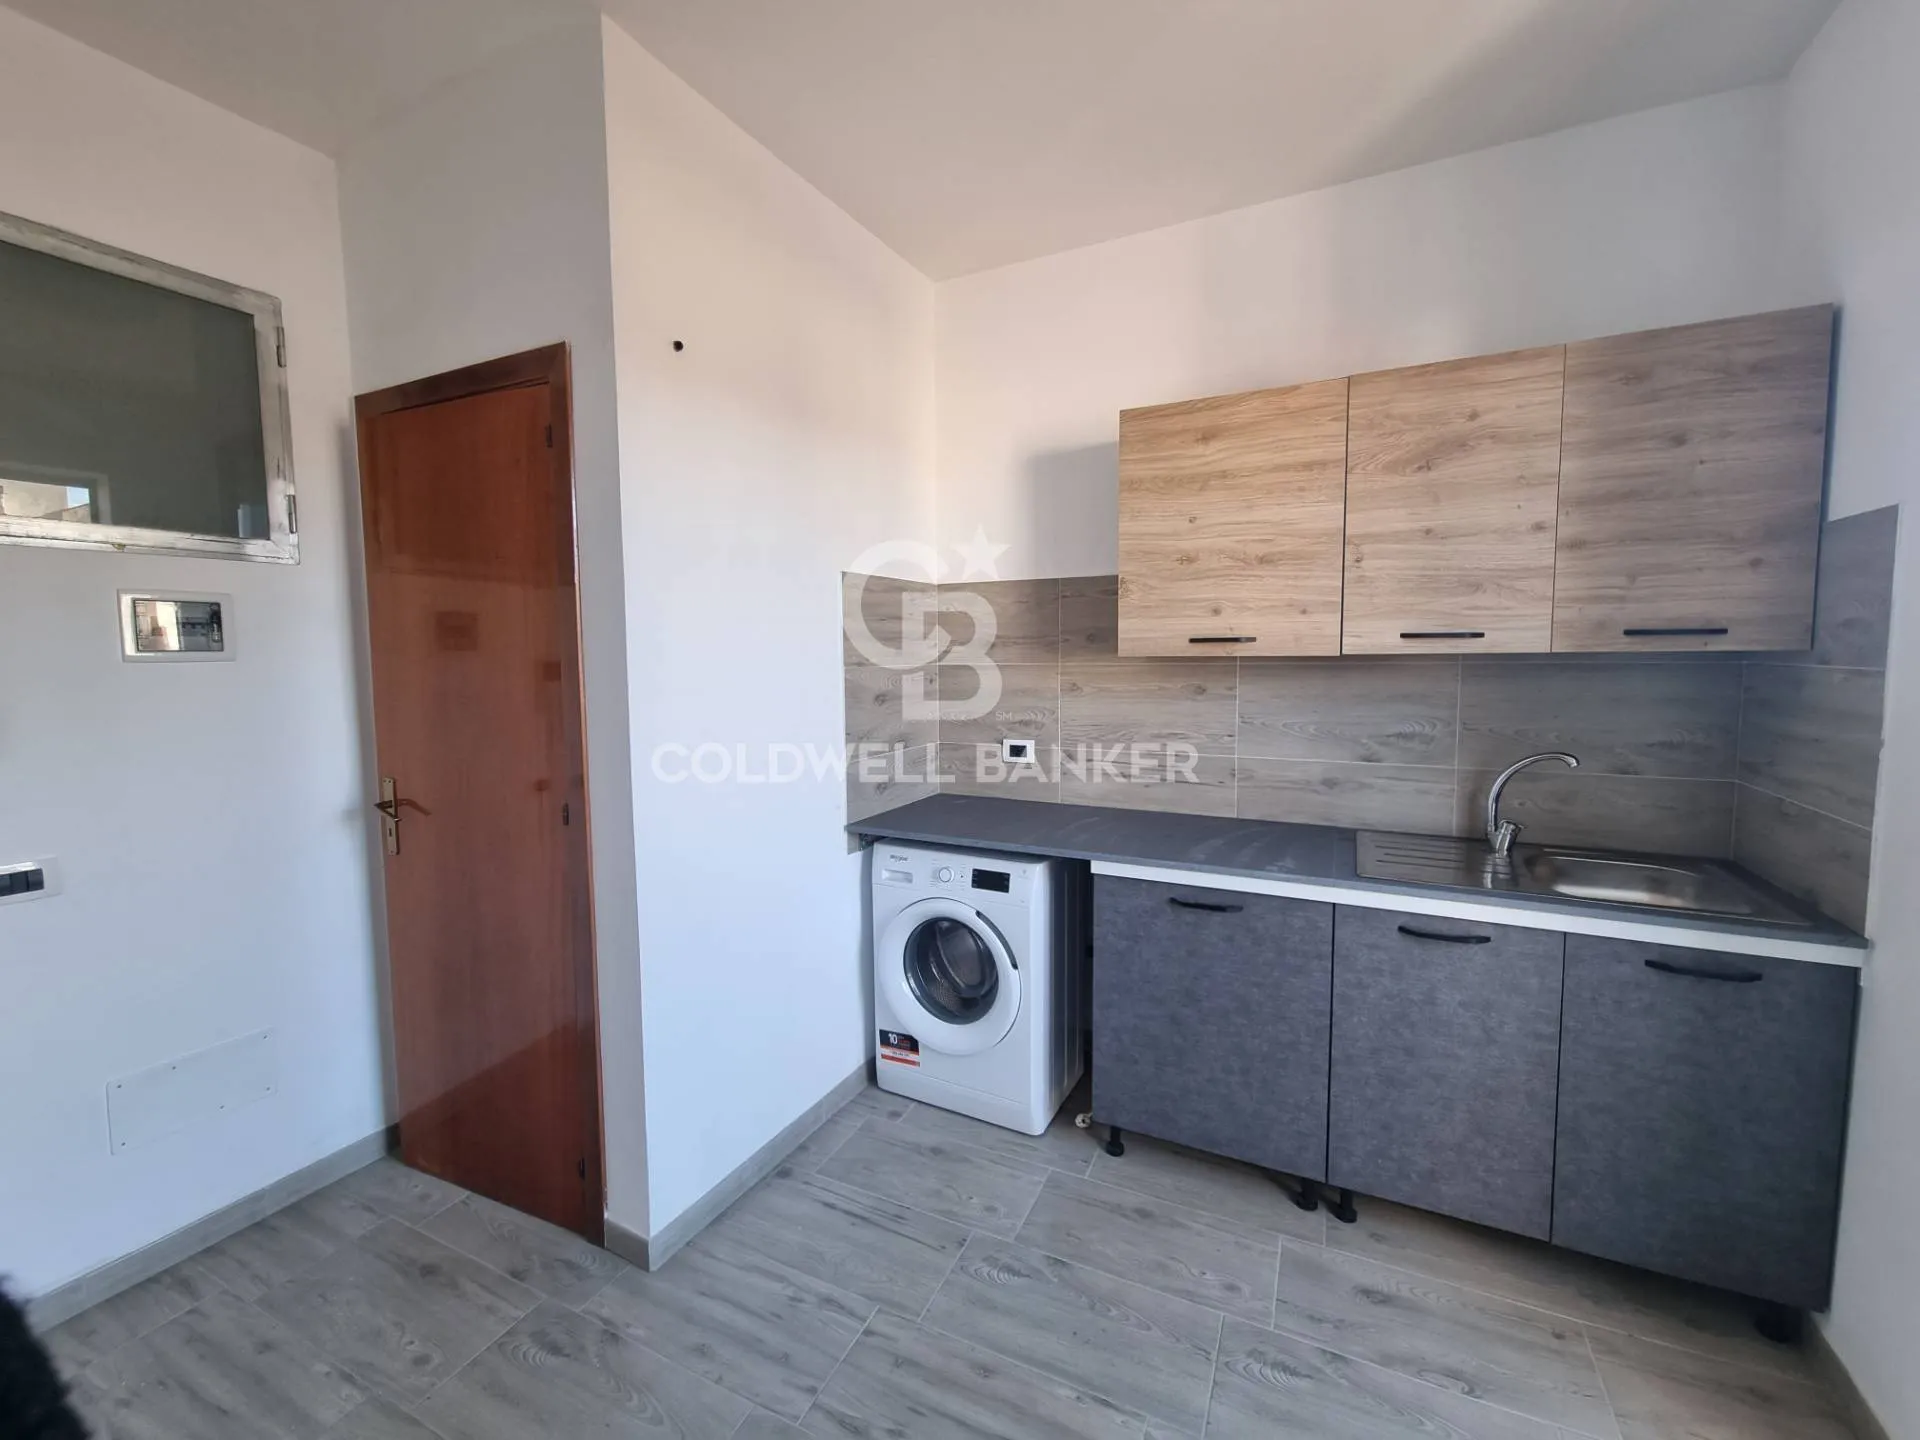 Immagine per Appartamento in vendita a Avola via ugo foscolo